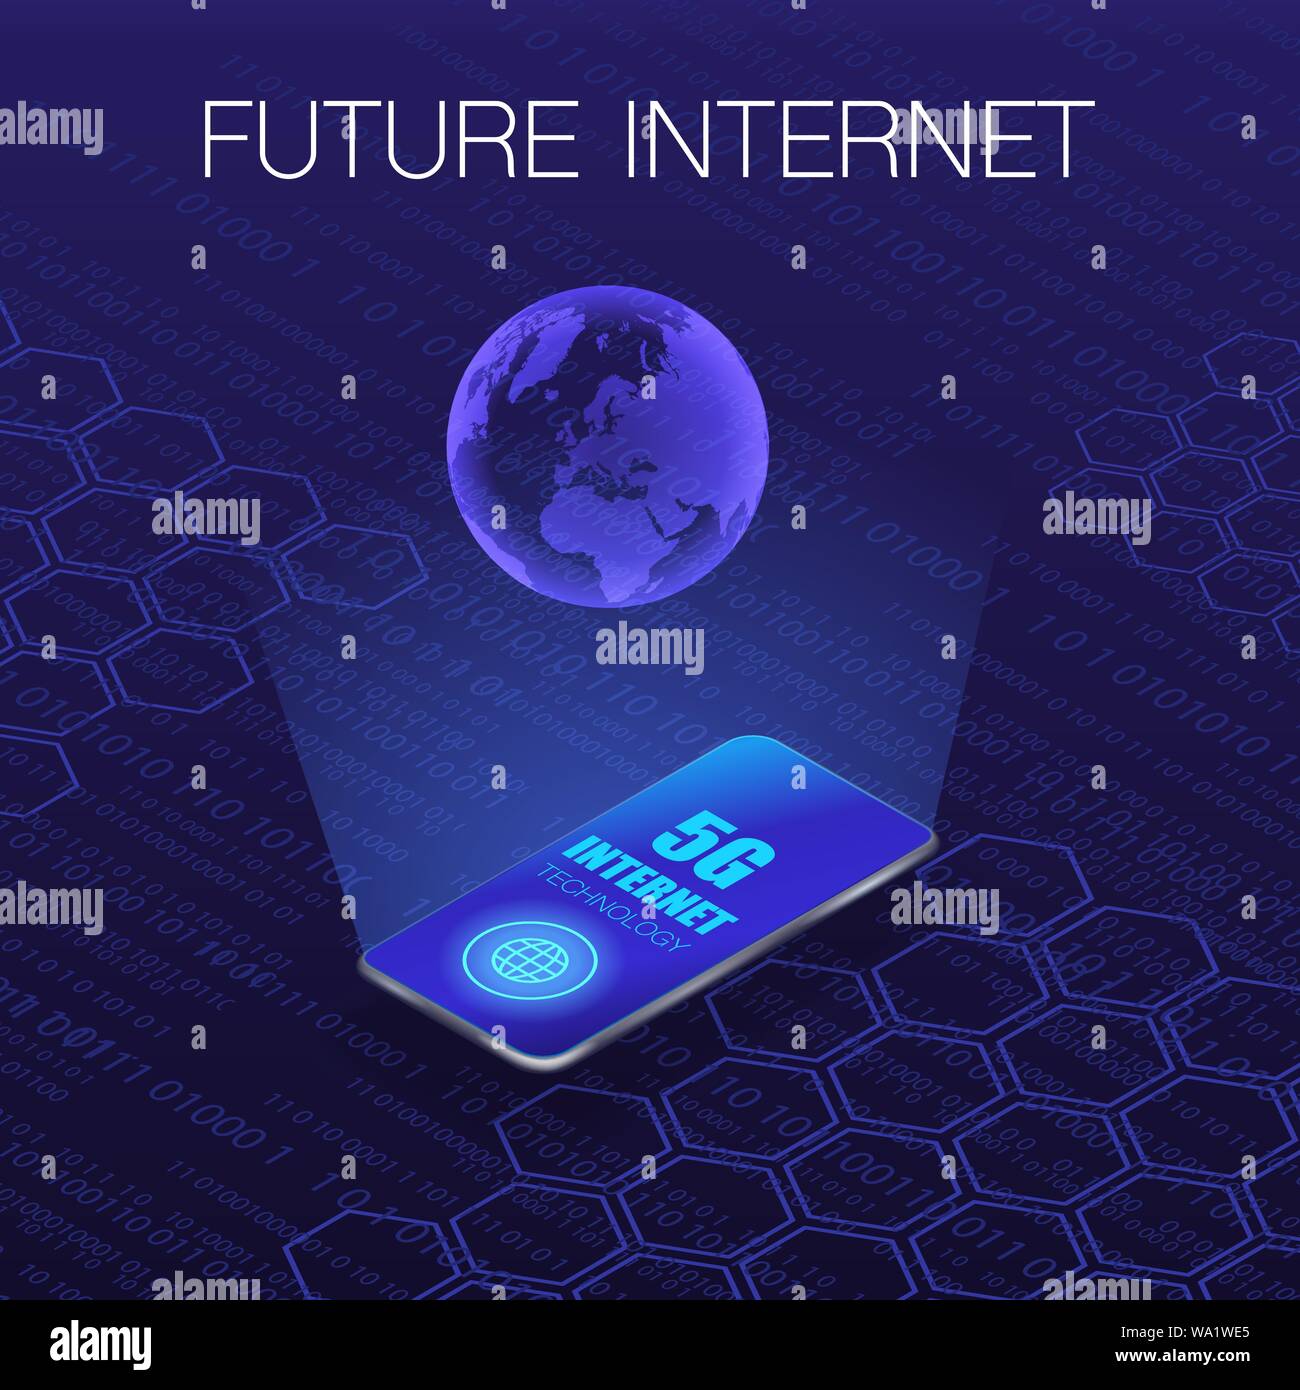 Abstract sfondo blu scuro con telefono, globo terrestre e il futuro di internet Illustrazione Vettoriale